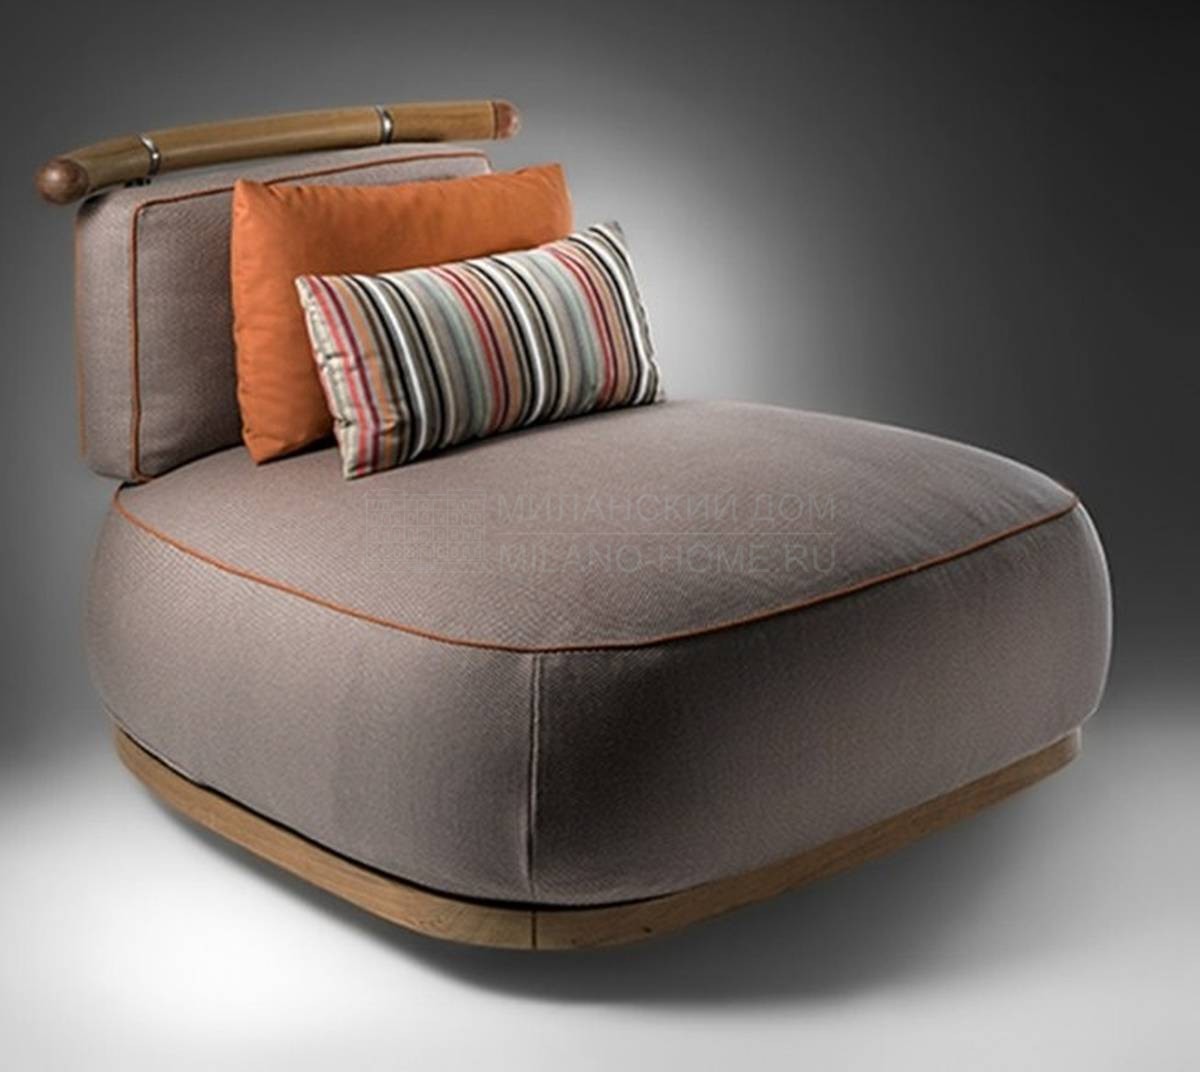 Лаунж кресло A1695 / Salvia armchair из Италии фабрики ANNIBALE COLOMBO